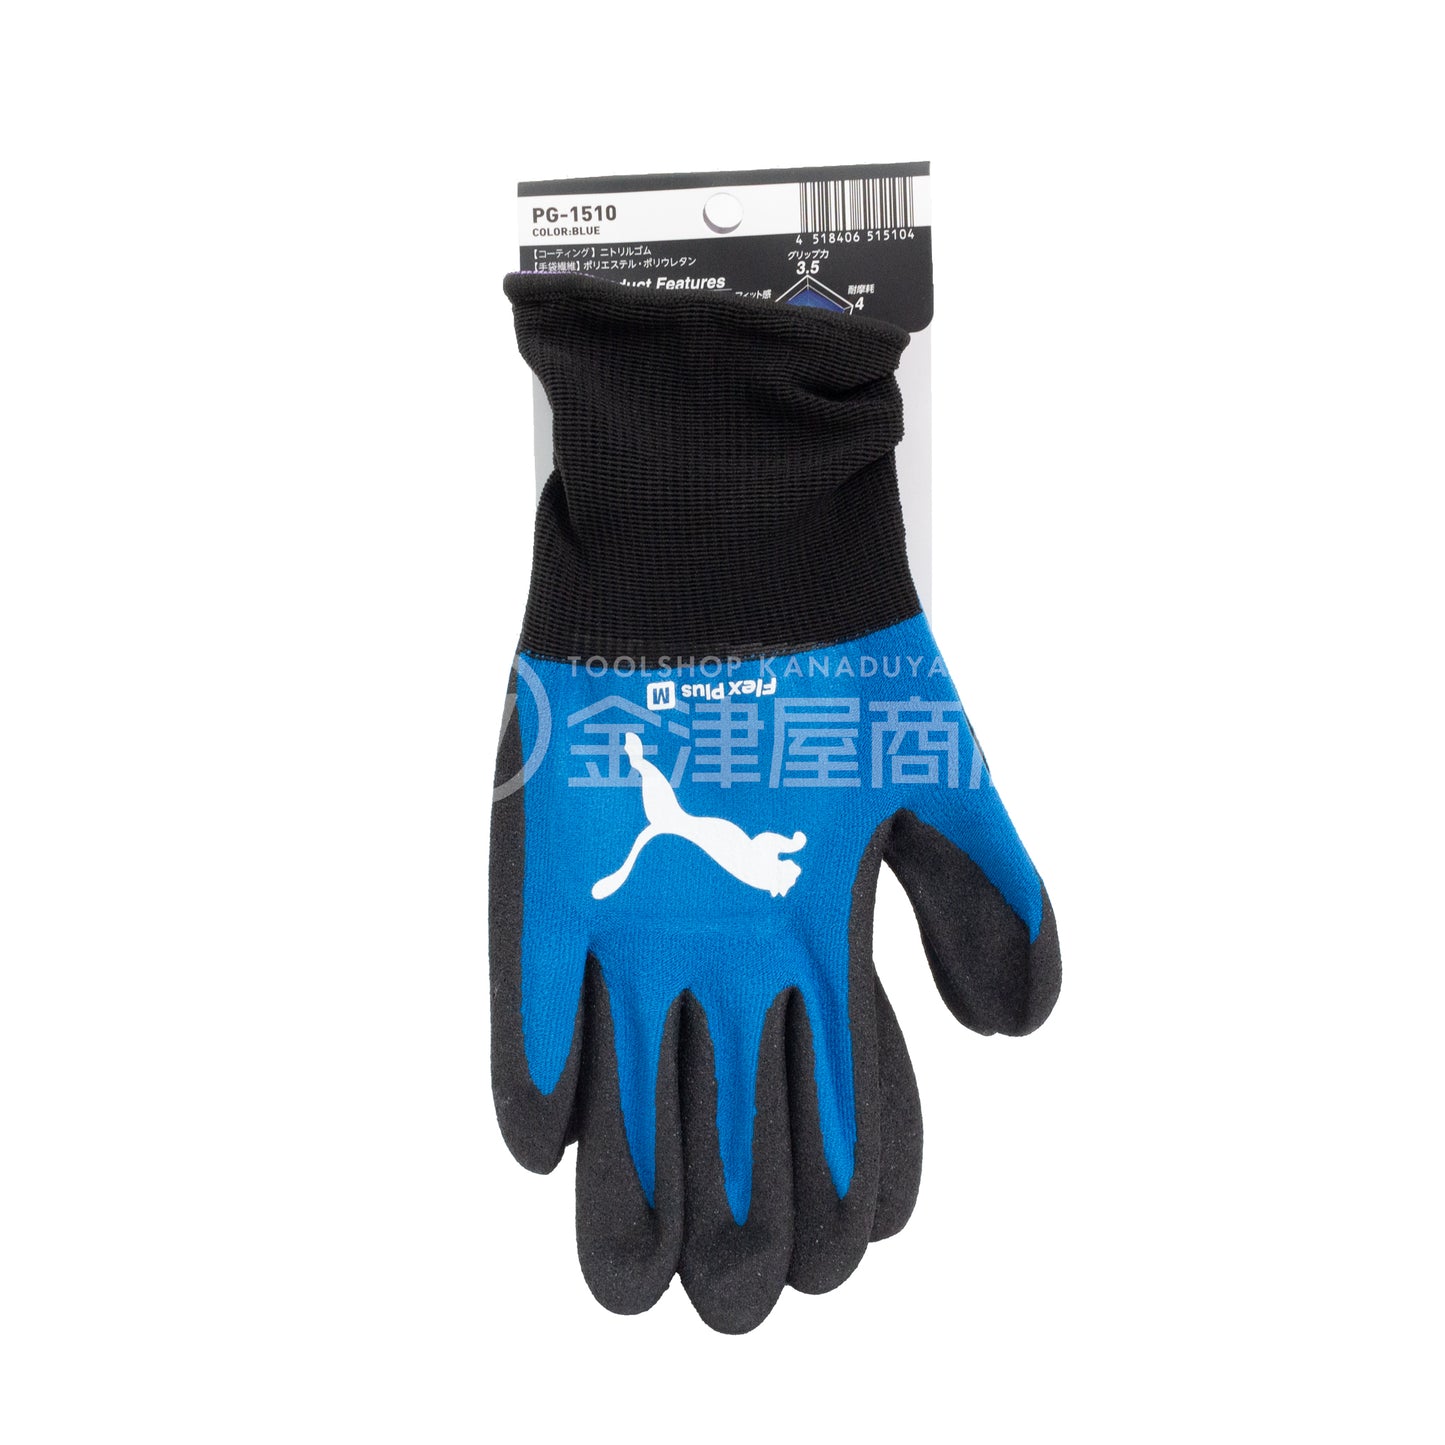 プーマ フレックスプラス 作業手袋 PG-1510-